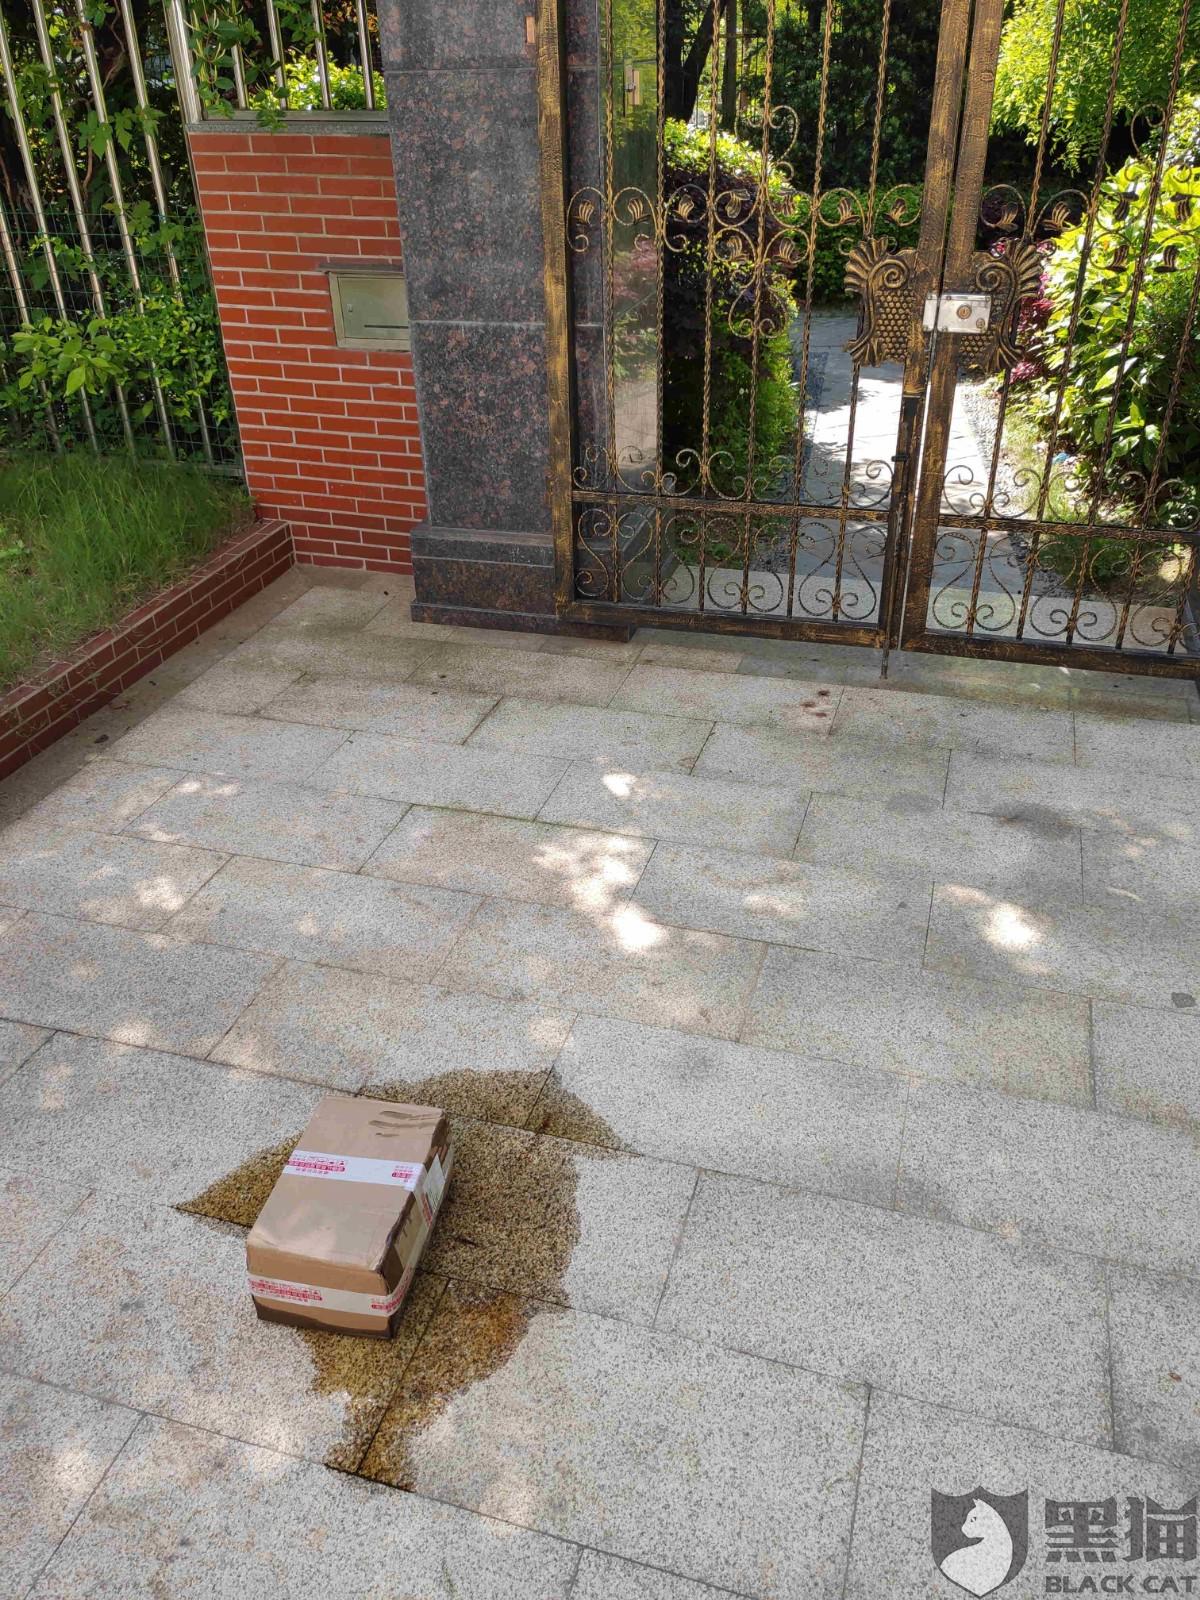 黑猫投诉:上海邮政的快递员未与我联系直接将